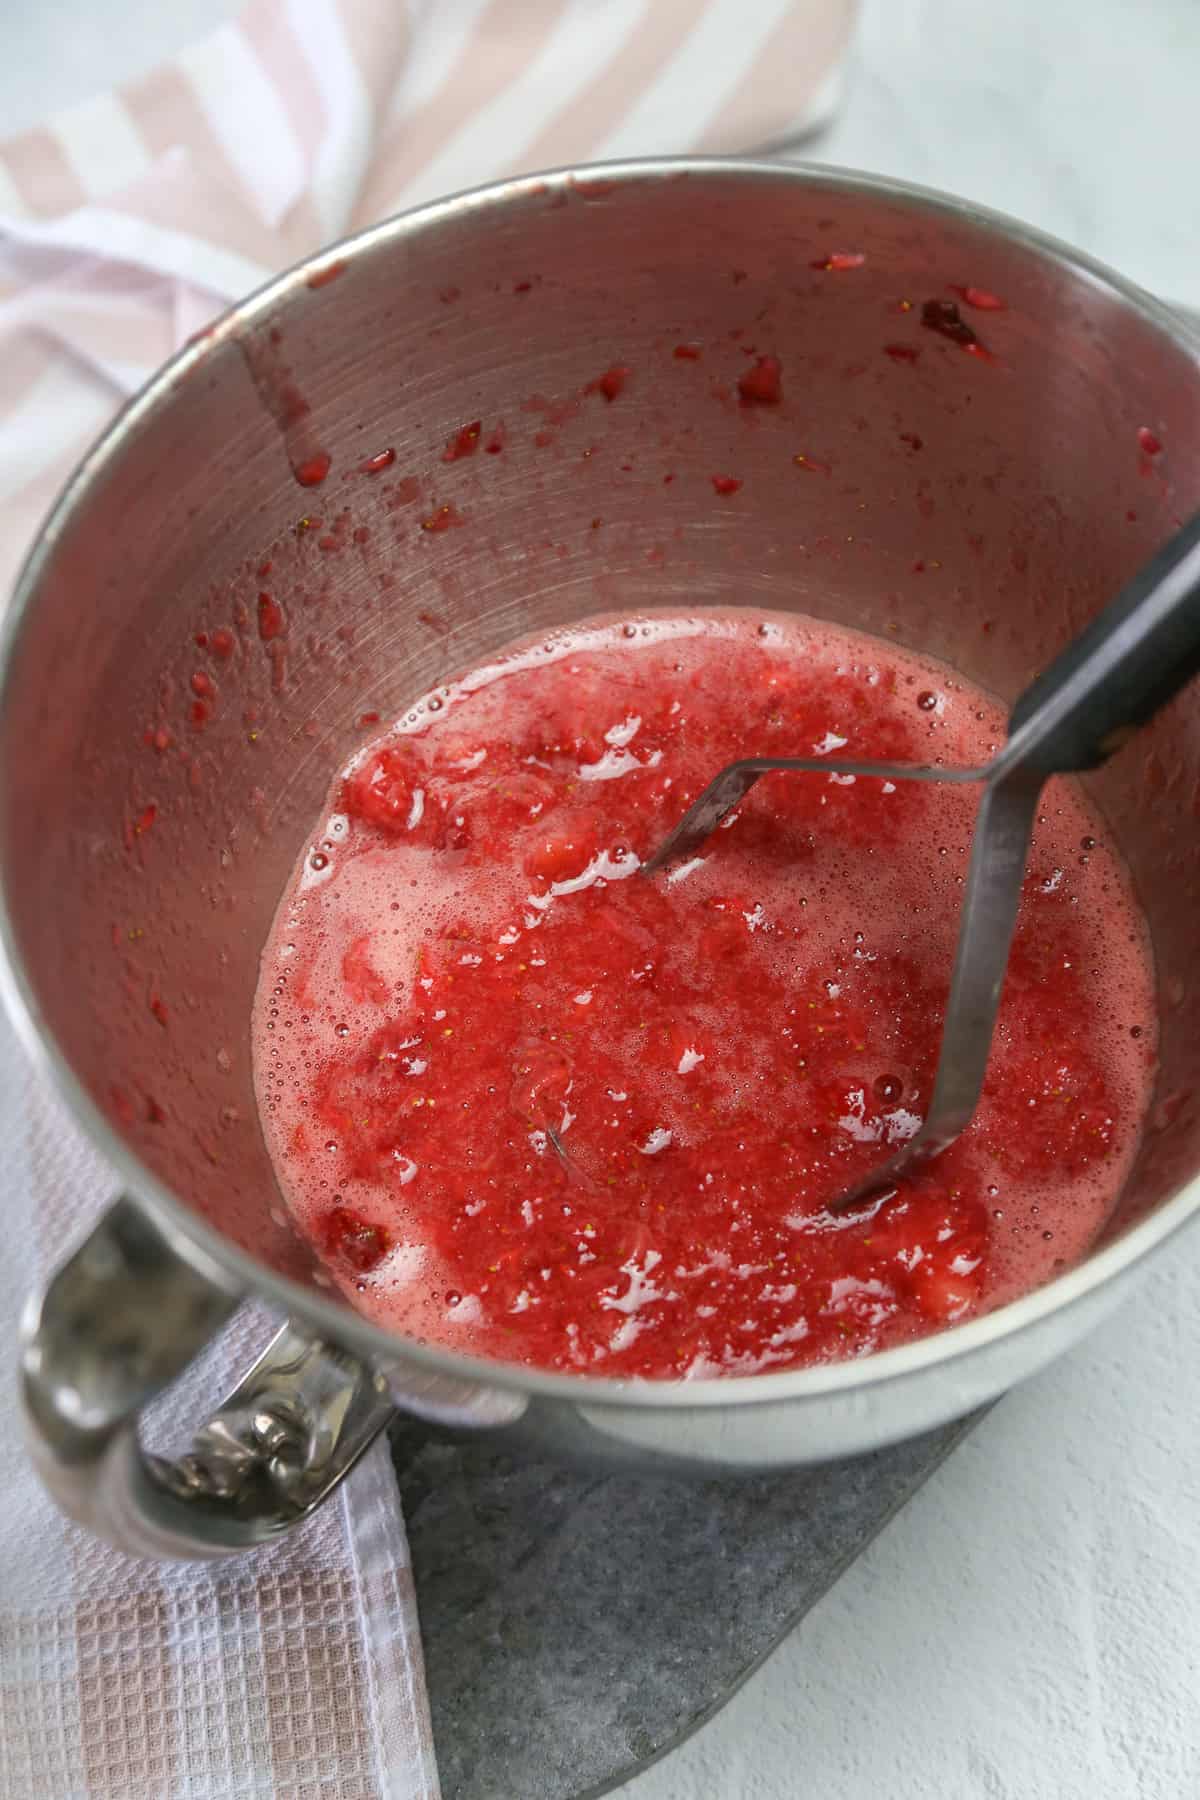 Using a potato masher to crush strawberries to make freezer jam